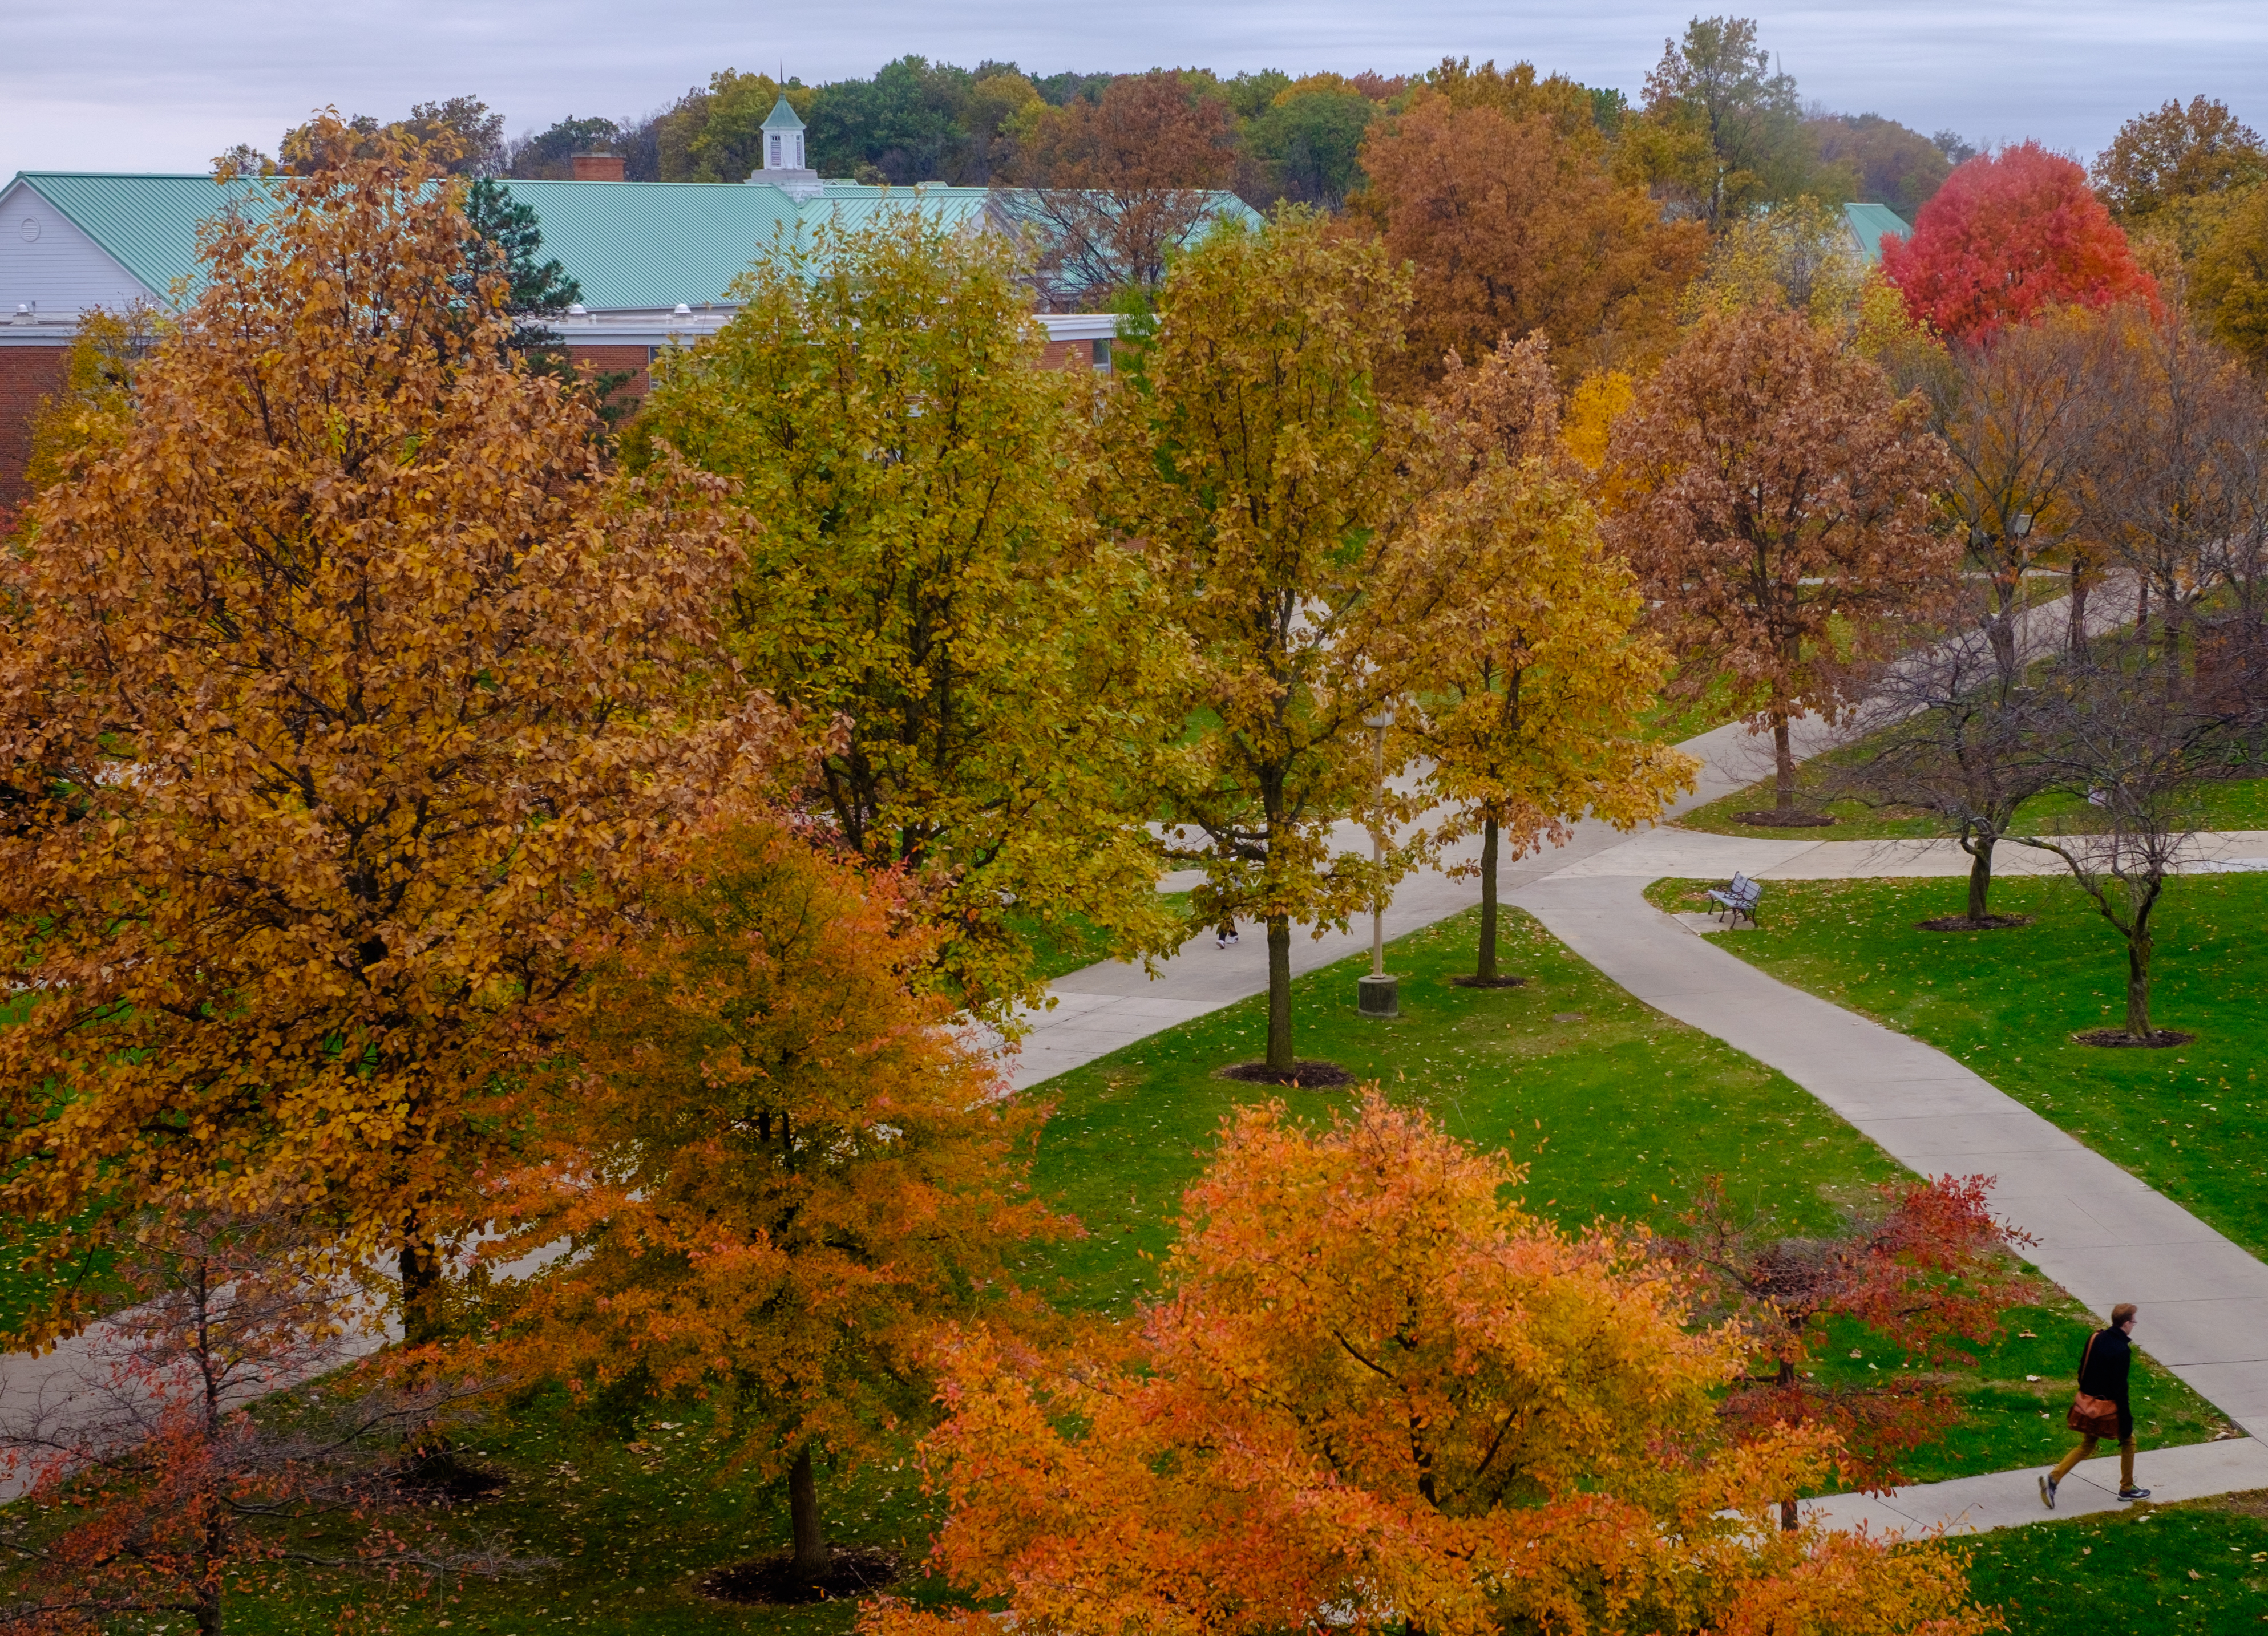 Autumn on campus | Ohio Northern University